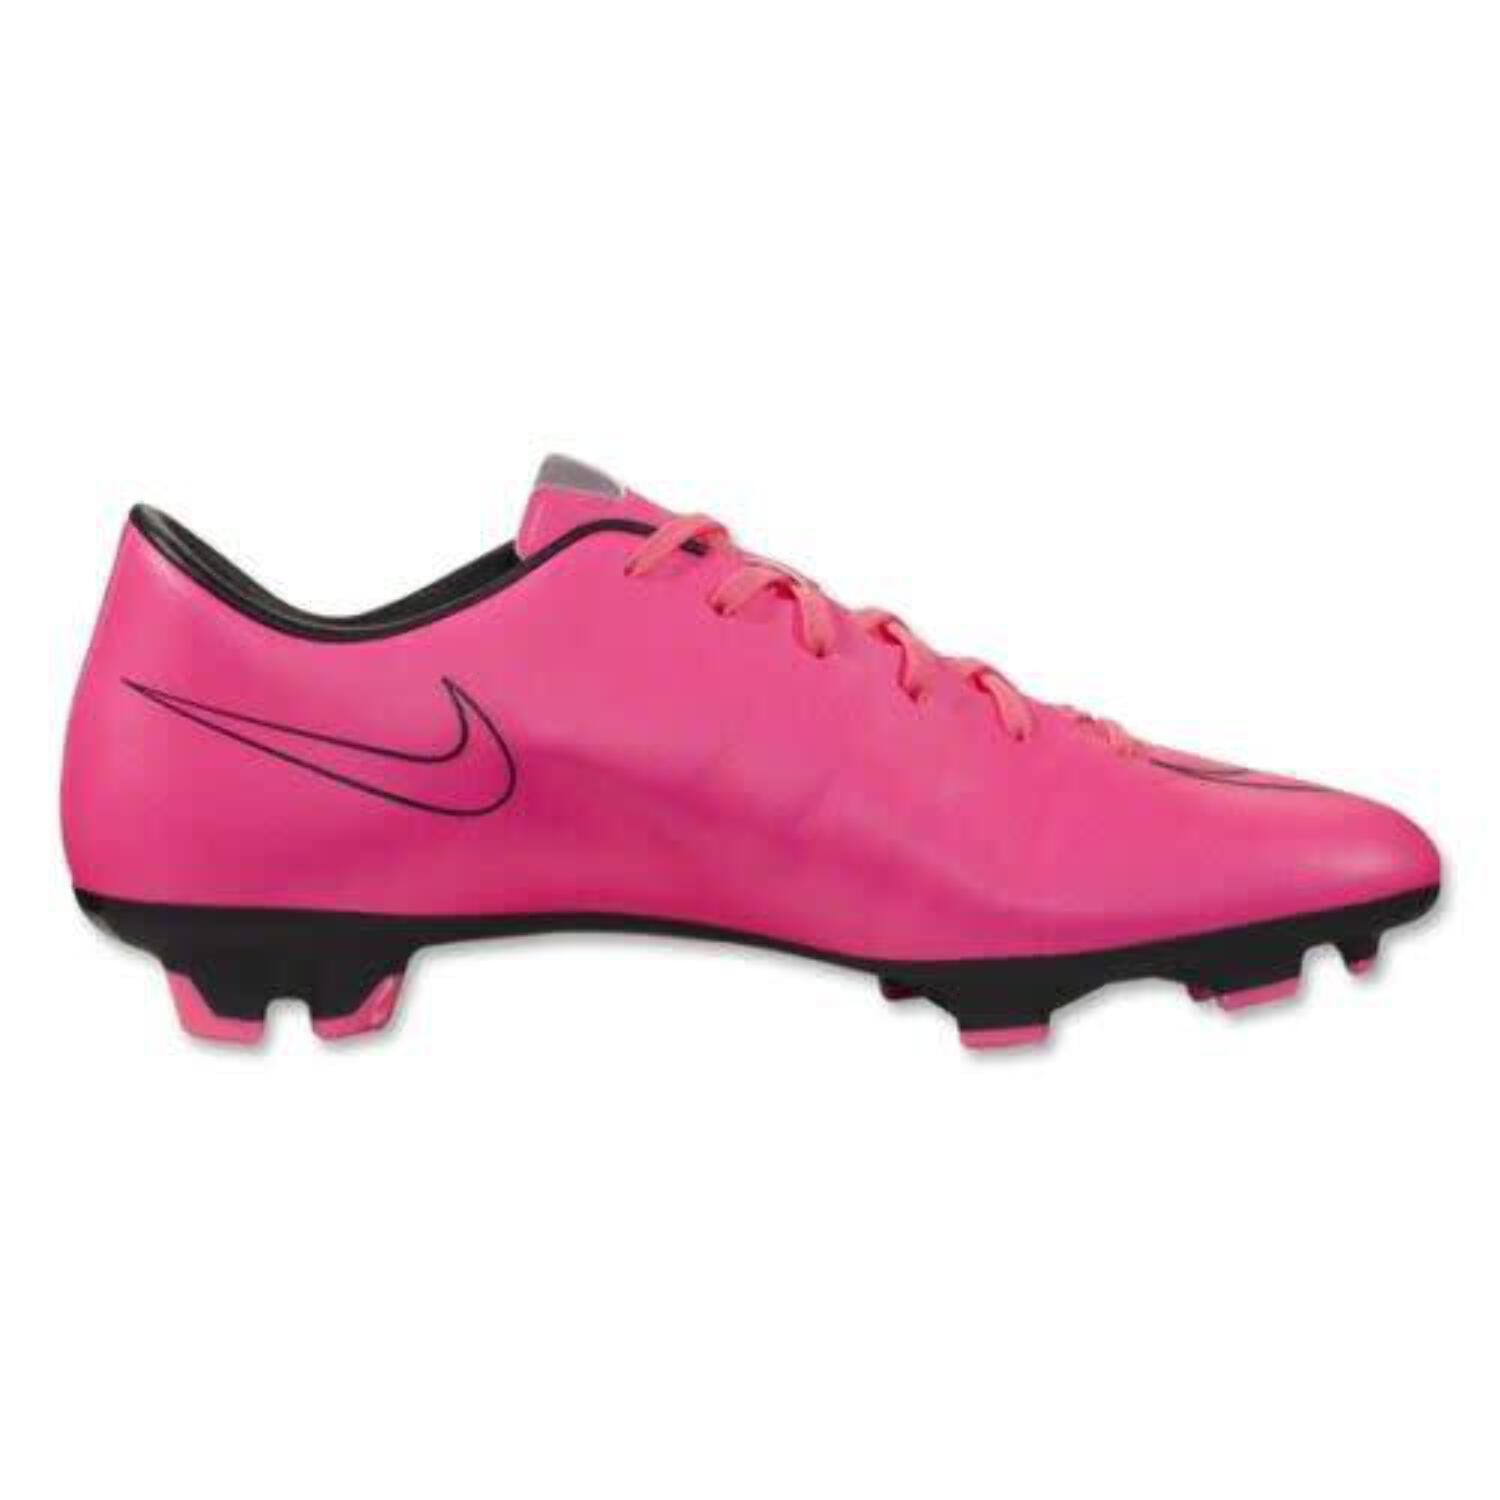 Casa de la carretera pavo compacto Nike Mercurial Victory V FG 2015 Soccer Shoes - Hyper Pink/Black 7 -  Walmart.com